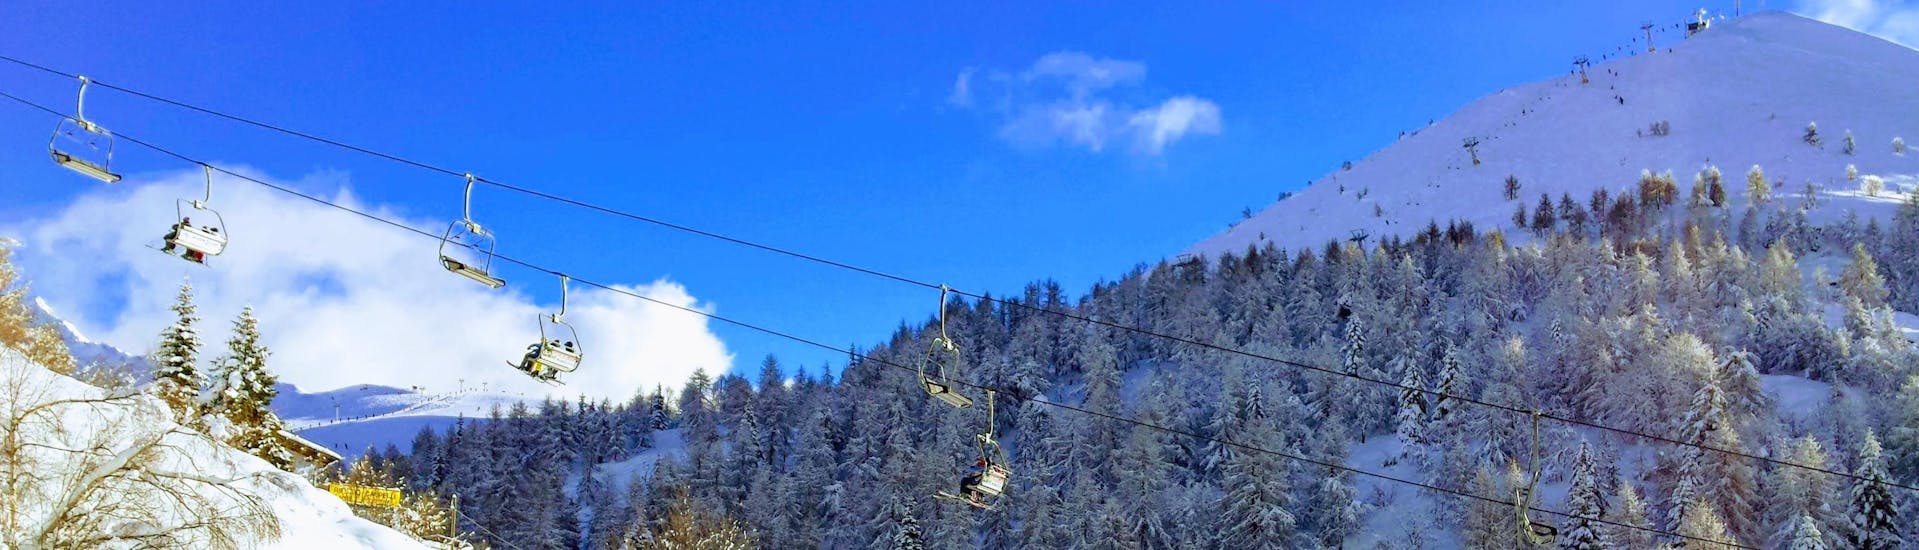 Téléski montant les pentes dans la station de ski de Piani di Bobbio, en Italie.